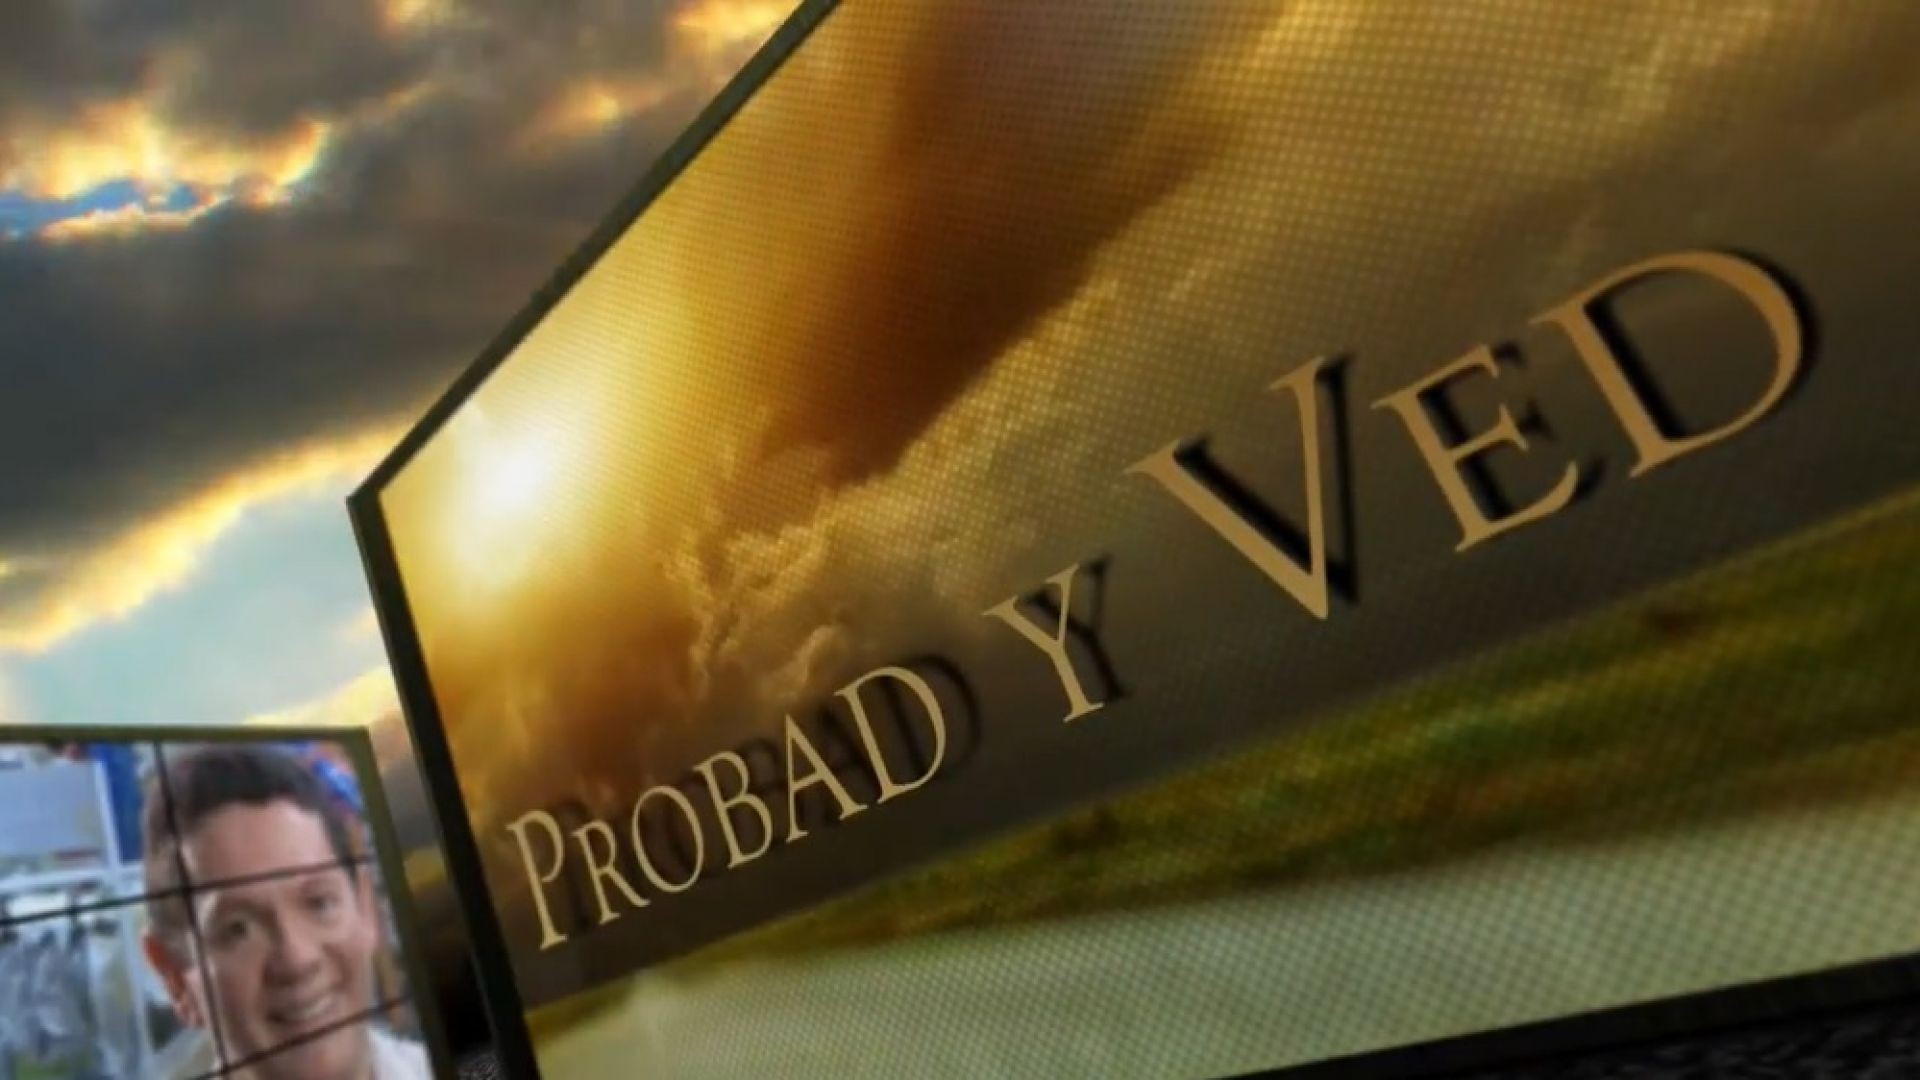 Probad y Ved 2013 - Fe y pruebas - 09/Nov